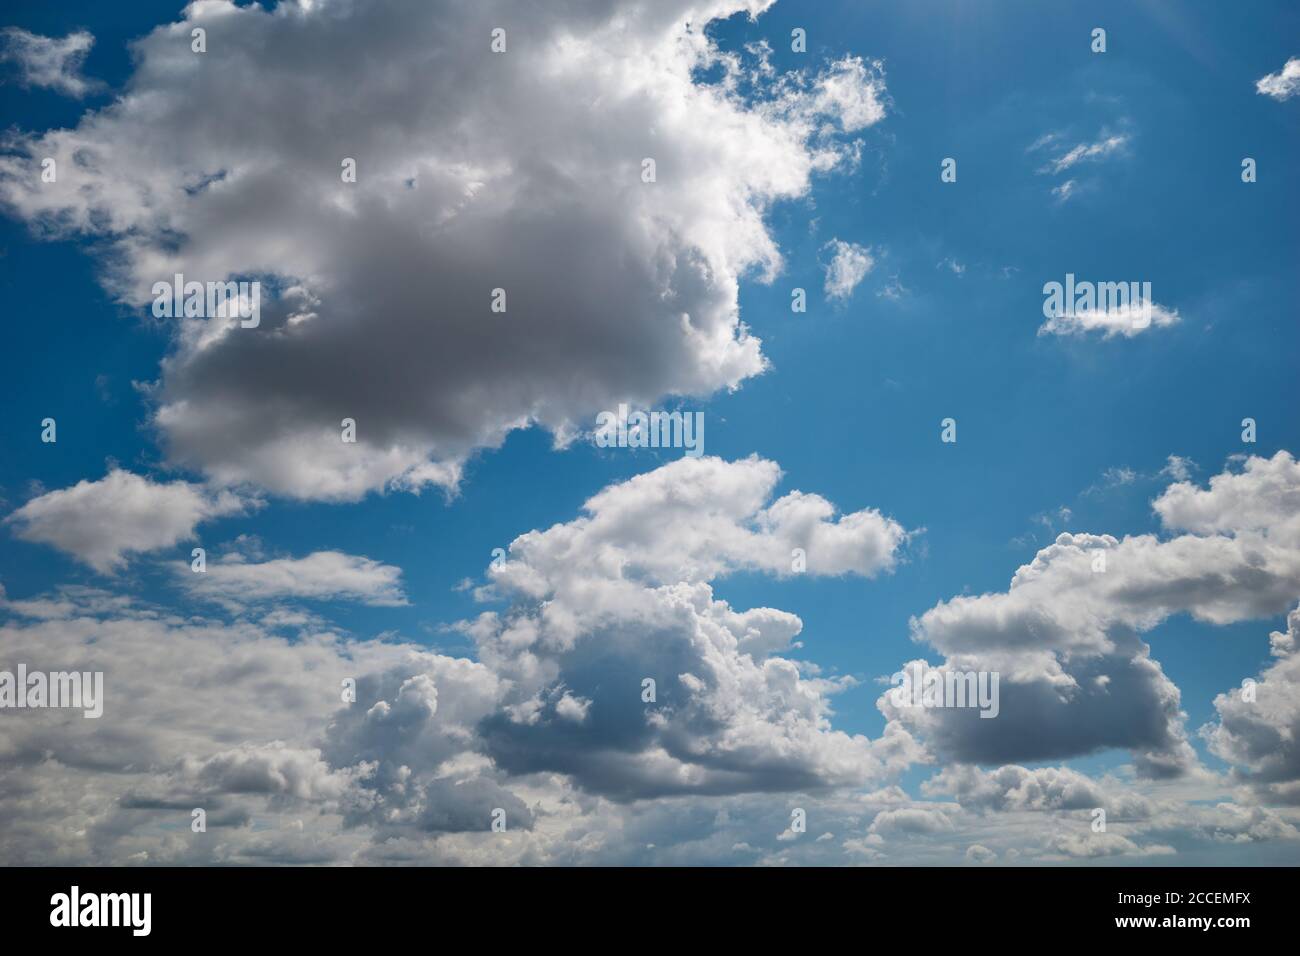 Baumwollartige Cumuli-Wolken schweben im sonnenbeschienenen blauen Himmel. Cumulus Wolken fliegen im türkisfarbenen Himmel. Hintergrund für Vorhersage und Meteorologie Illustration. Stockfoto